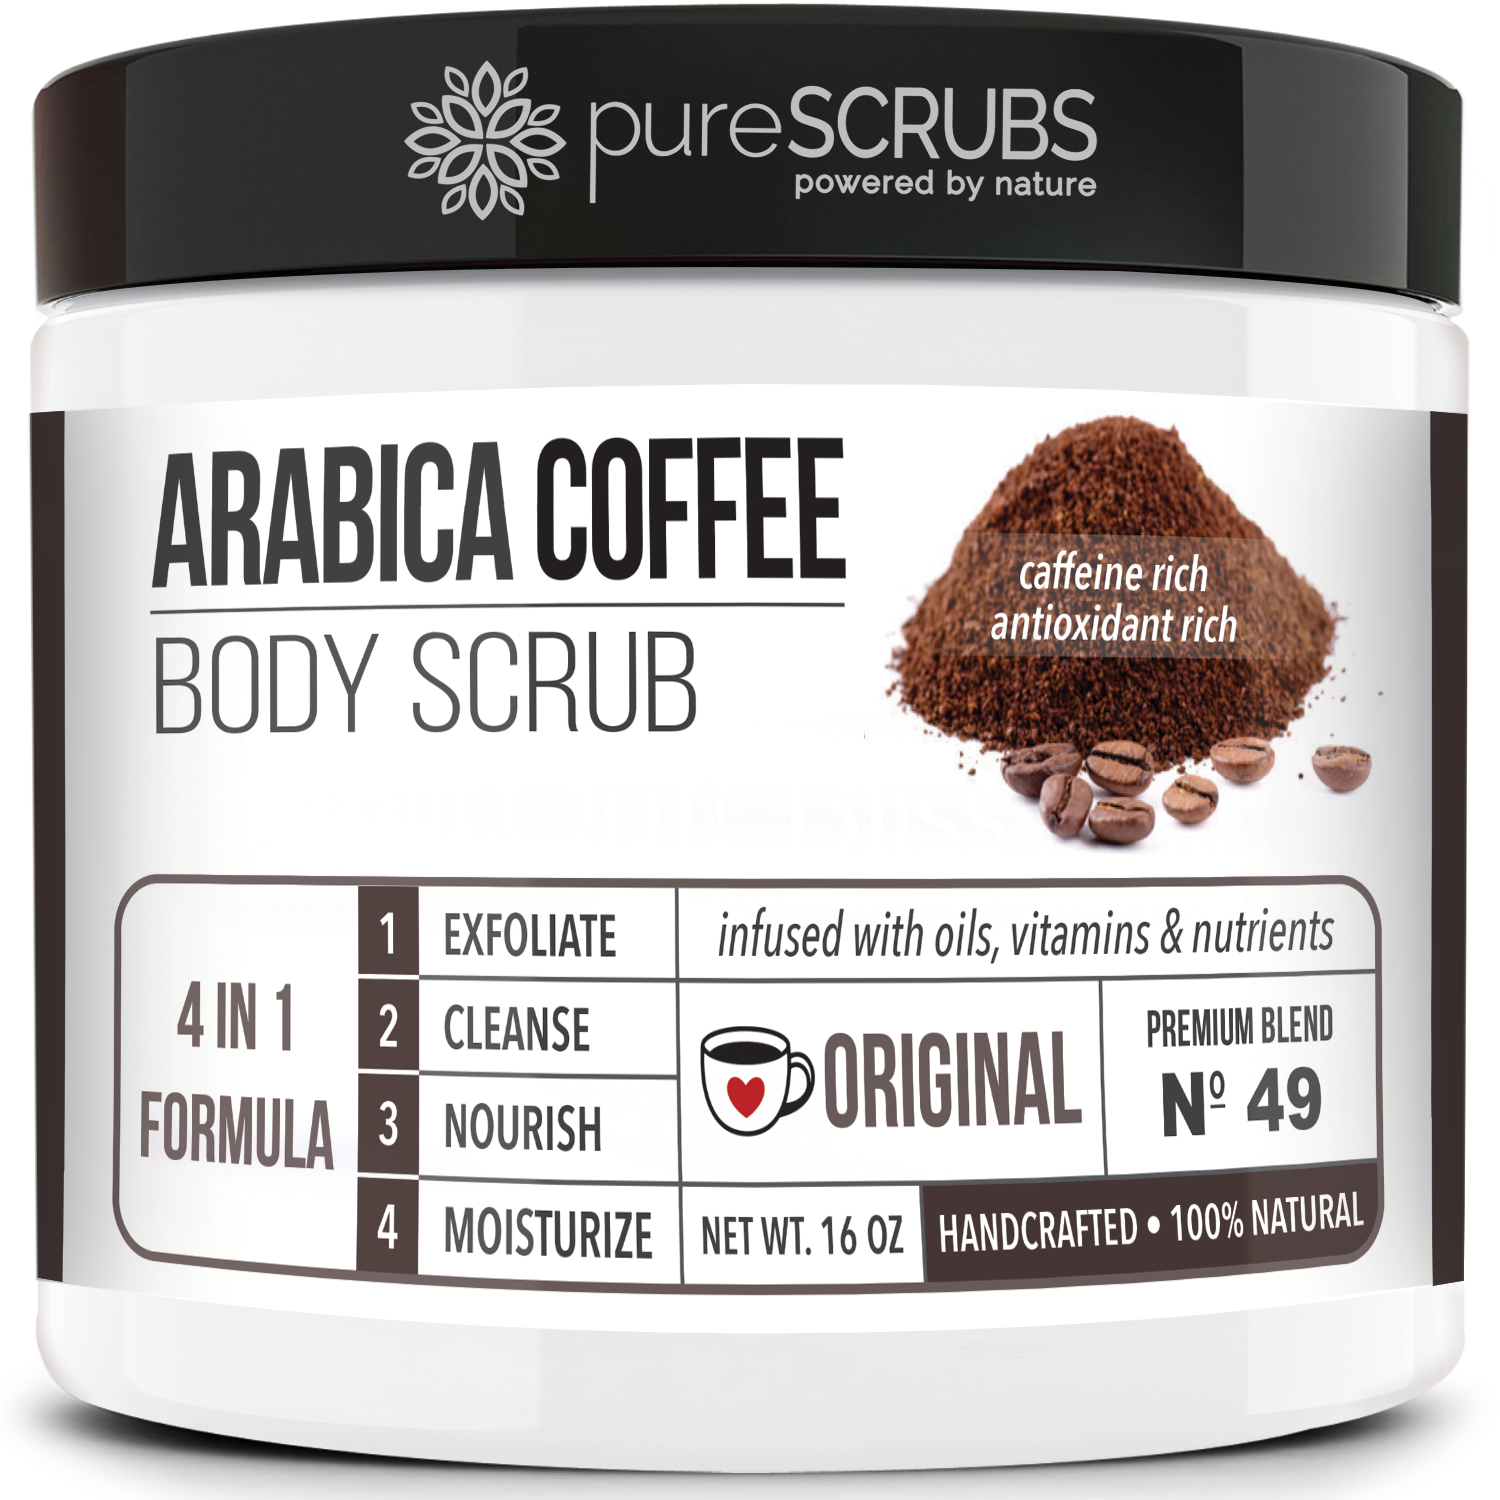 Original Body Scrub / Arabica Coffee / Premium Blend #49